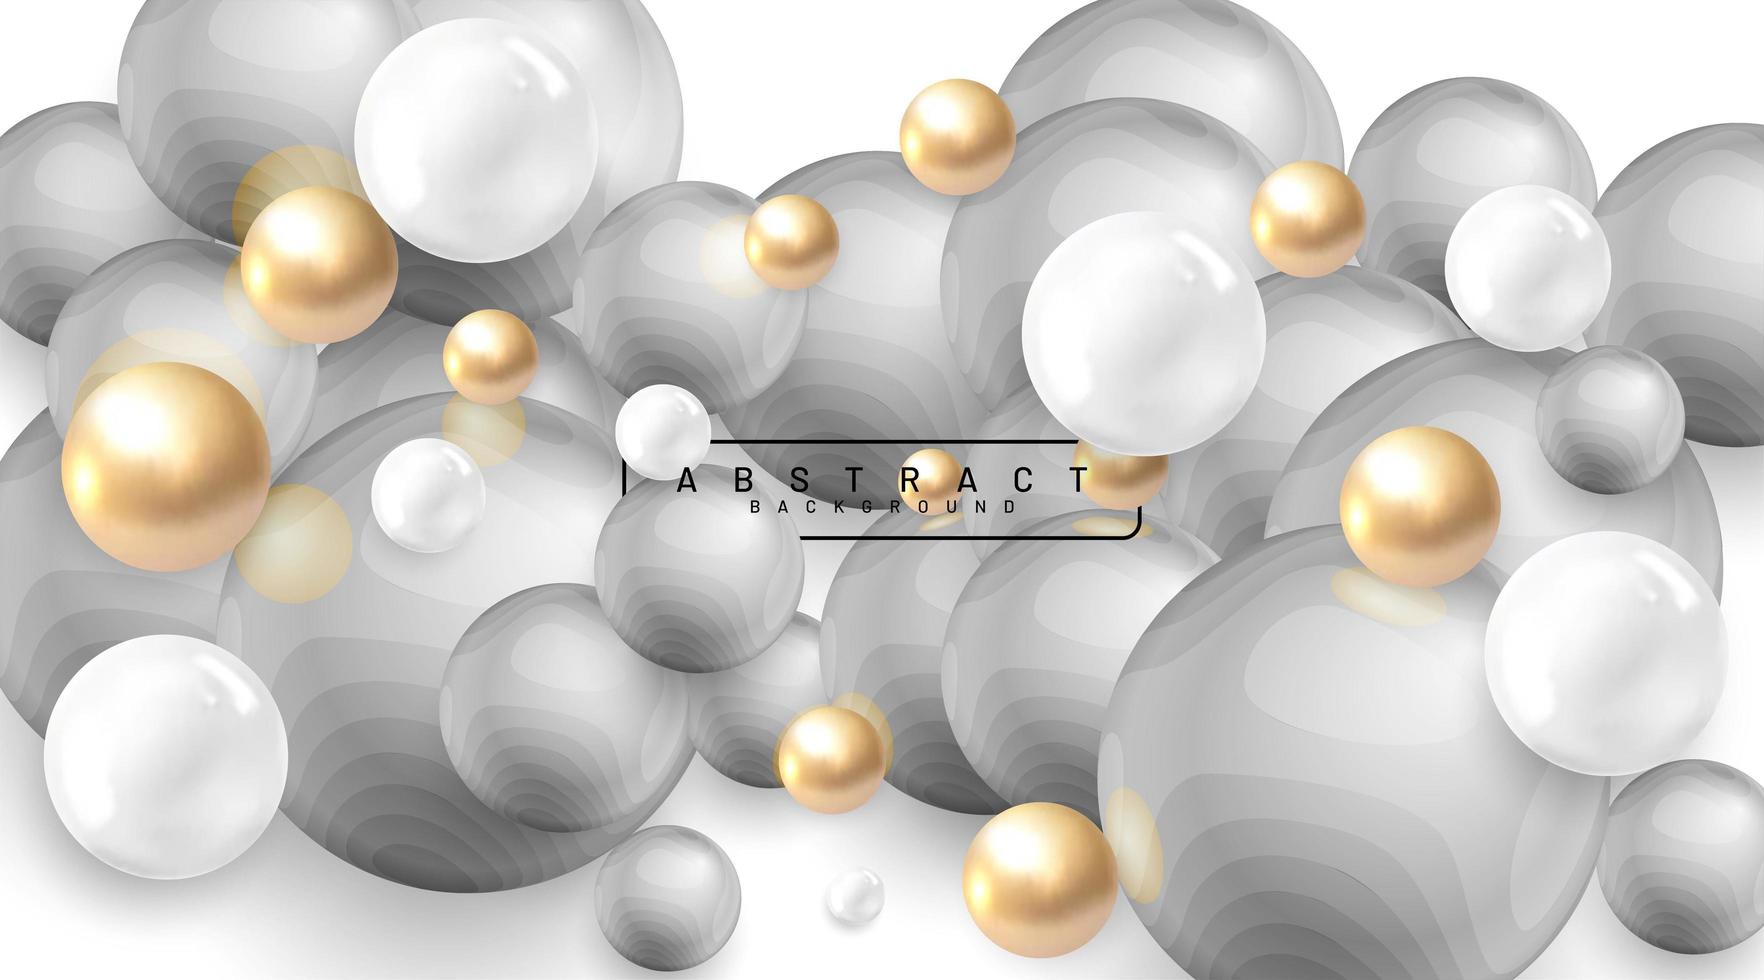 abstrakter Hintergrund mit 3D-Feldern. goldene und weiße Blasen. Vektorillustration einer strukturierten Kugel mit grauen Wellen. überlappendes Design vektor